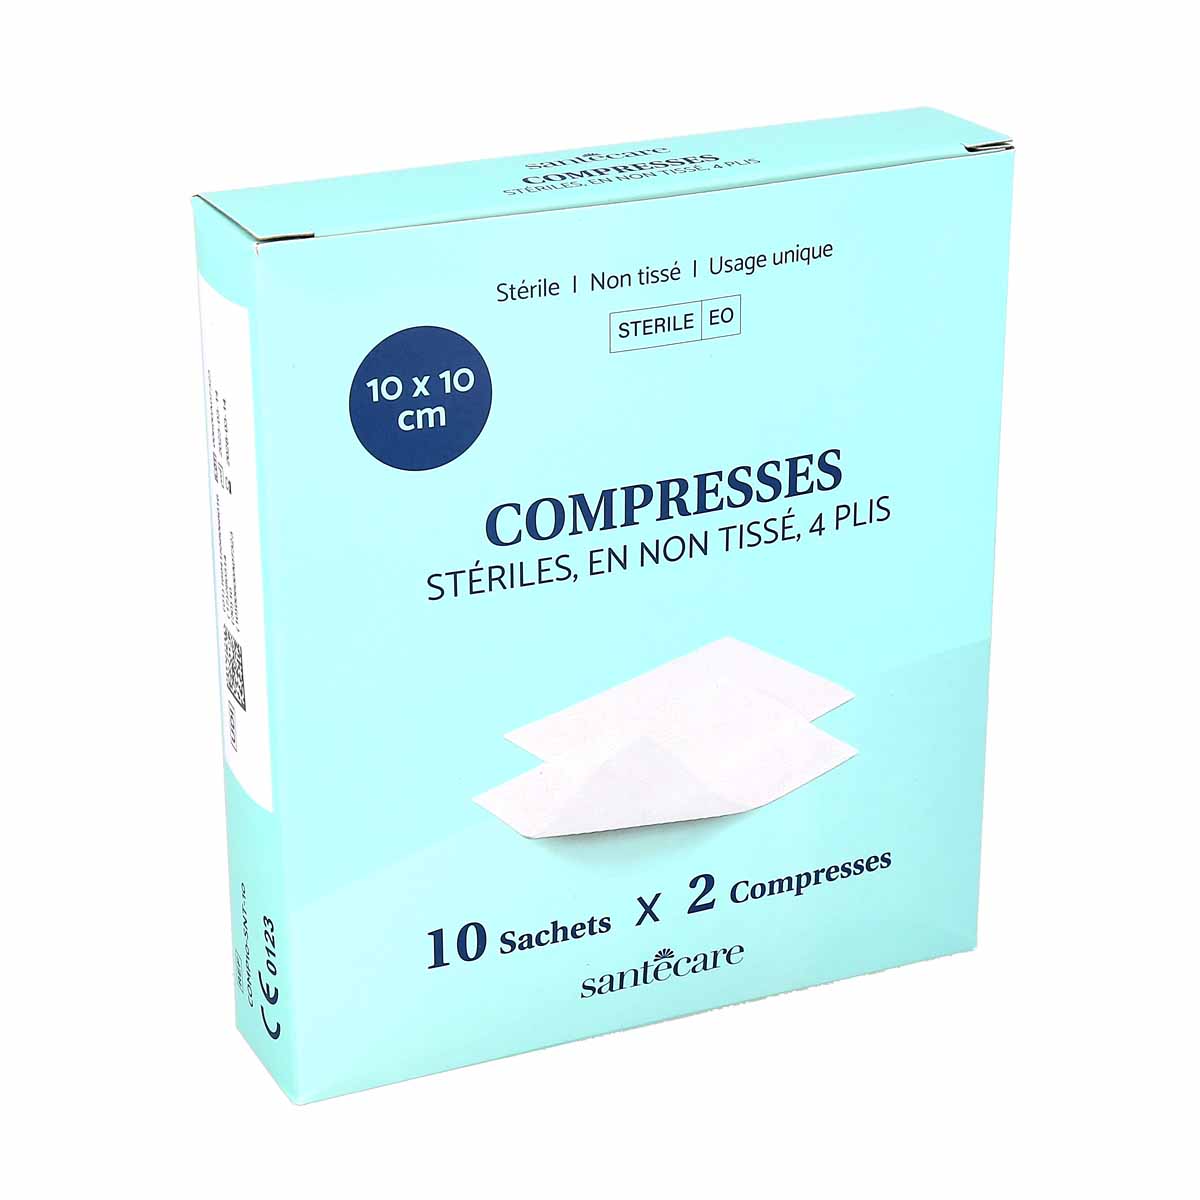 Santecare Compresses stériles, en non tissé, 4 plis - 25 sachets x 2  compresses - 10x10cm